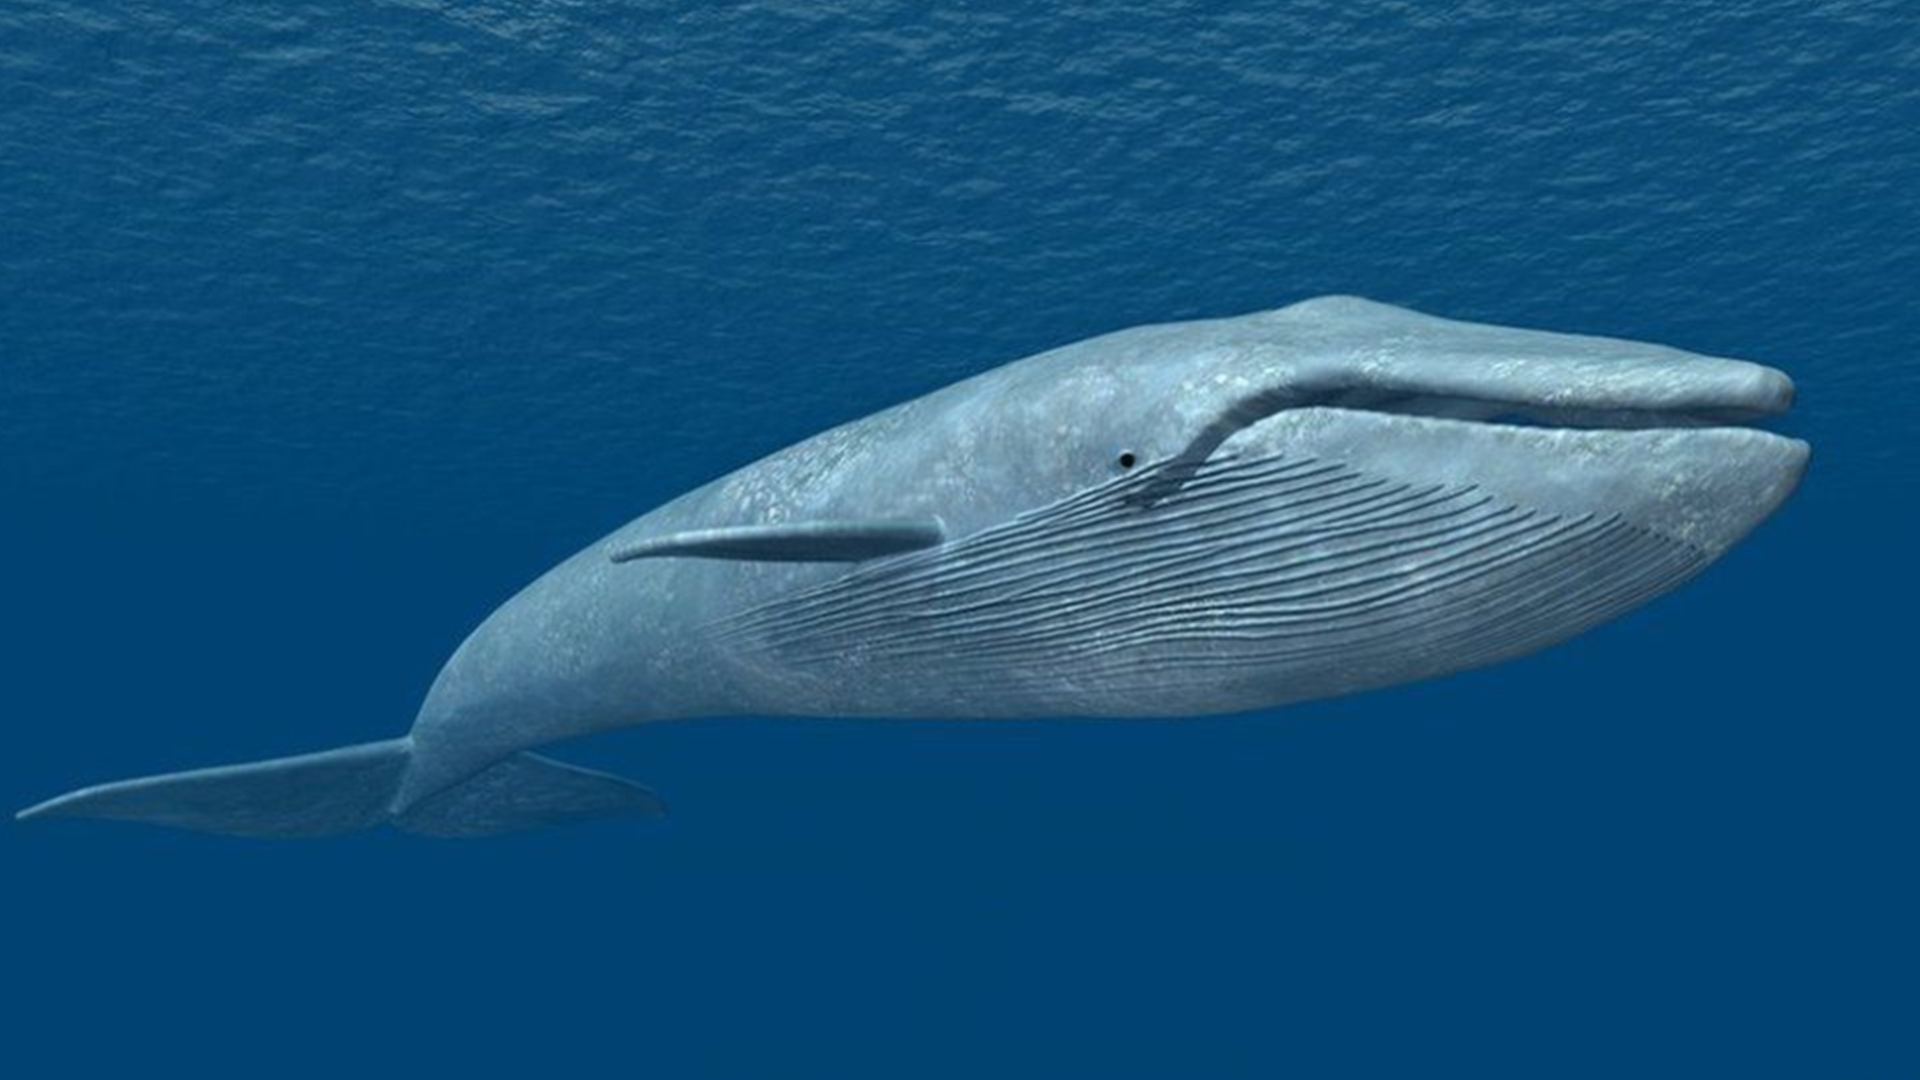 梅尔维尔鲸和蓝鲸谁大图片